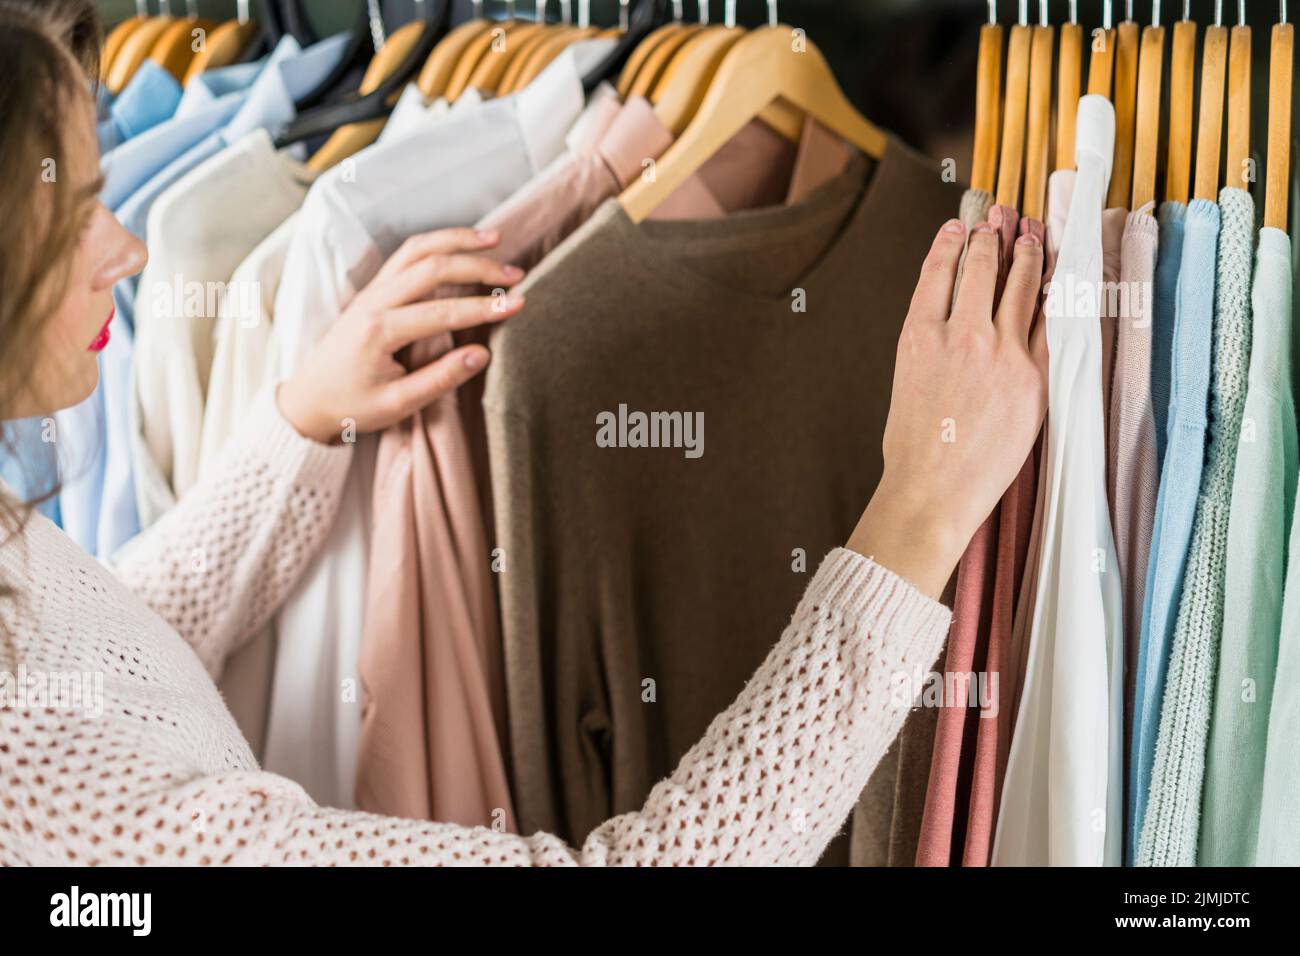 Frau, die beim Einkauf von Kleidungsstücken Kleidung wählt Stockfoto